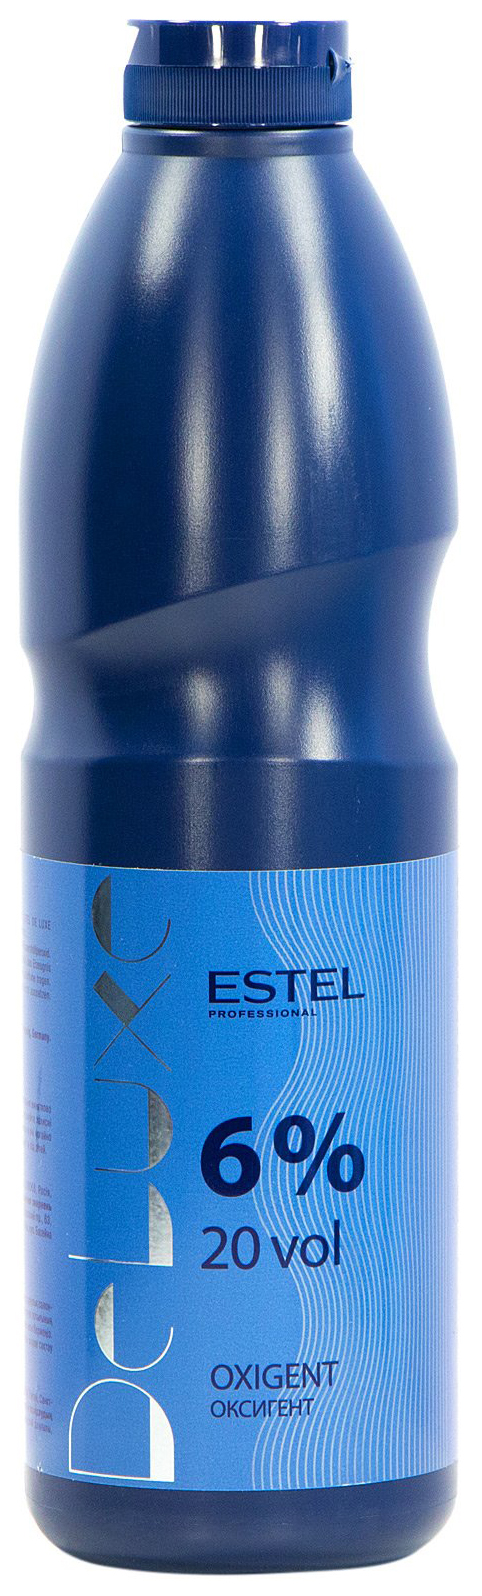 Проявитель Estel Professional De Luxe Oxigent 6% 900 мл проявитель estel professional de luxe oxigent 3% 900 мл